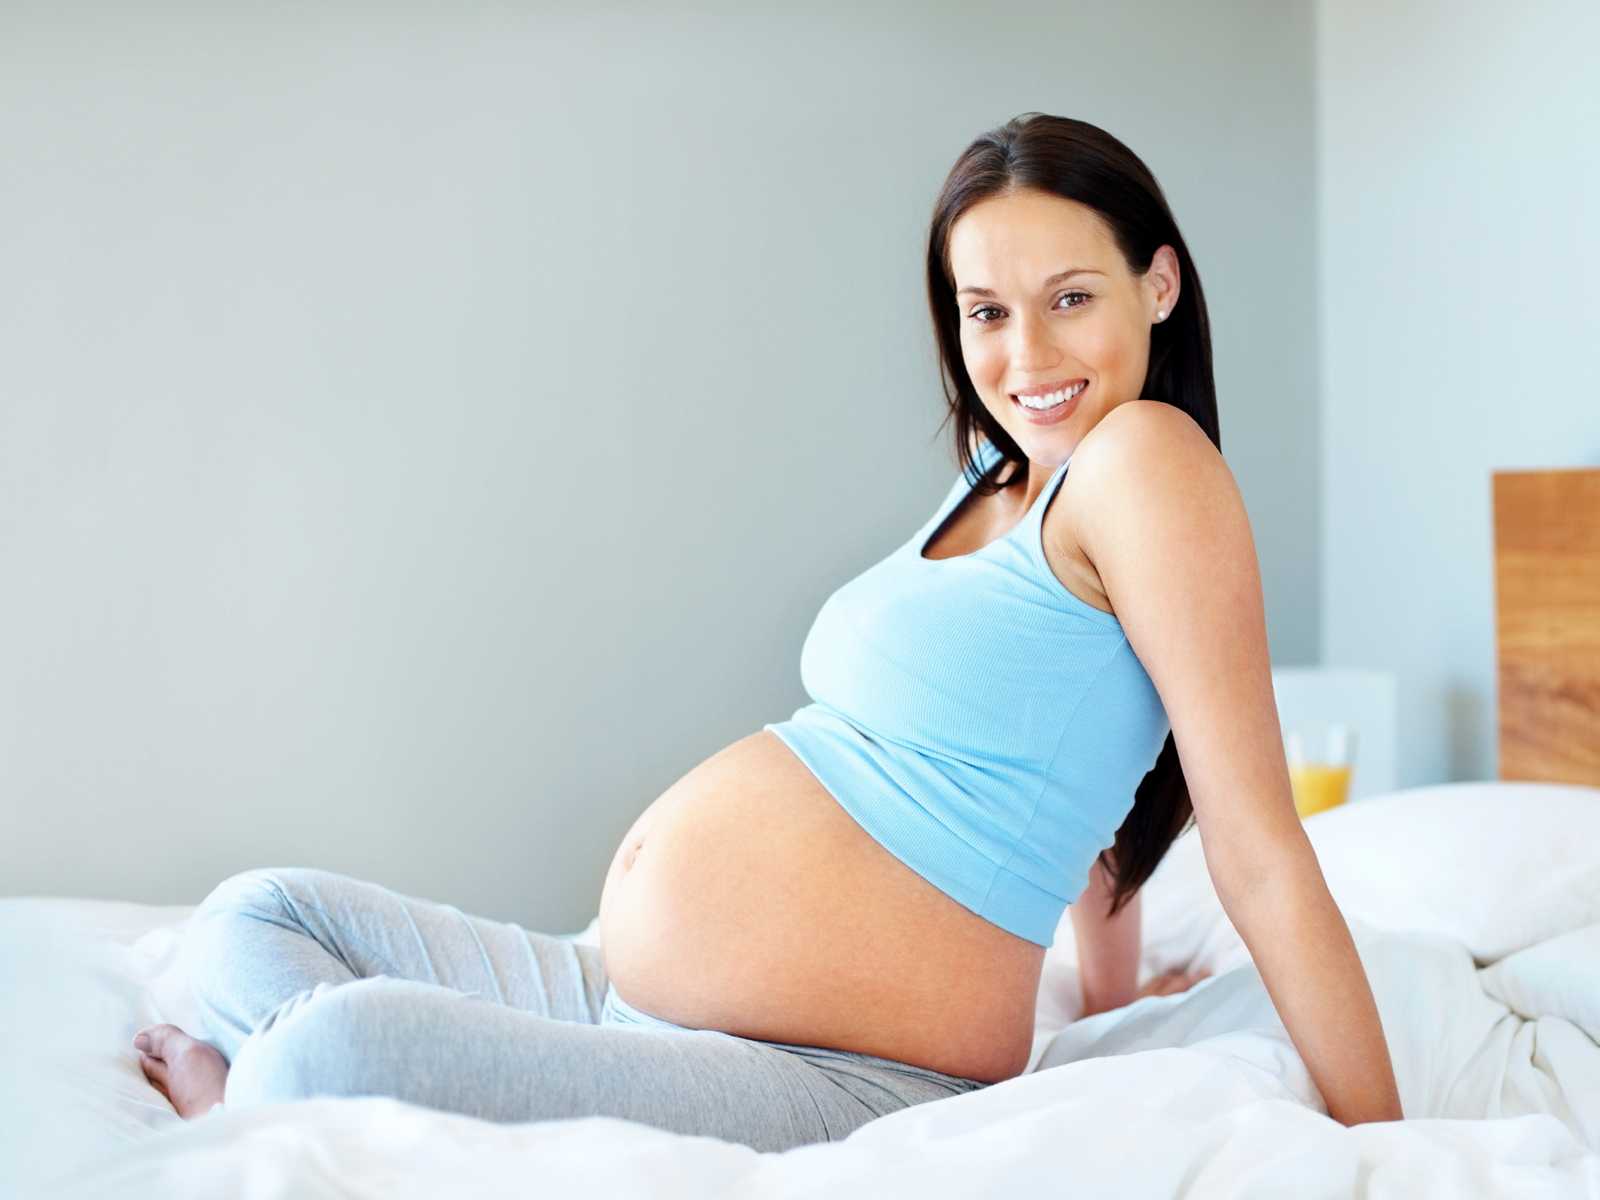 36 неделя беременности: что происходит с малышом и мамой